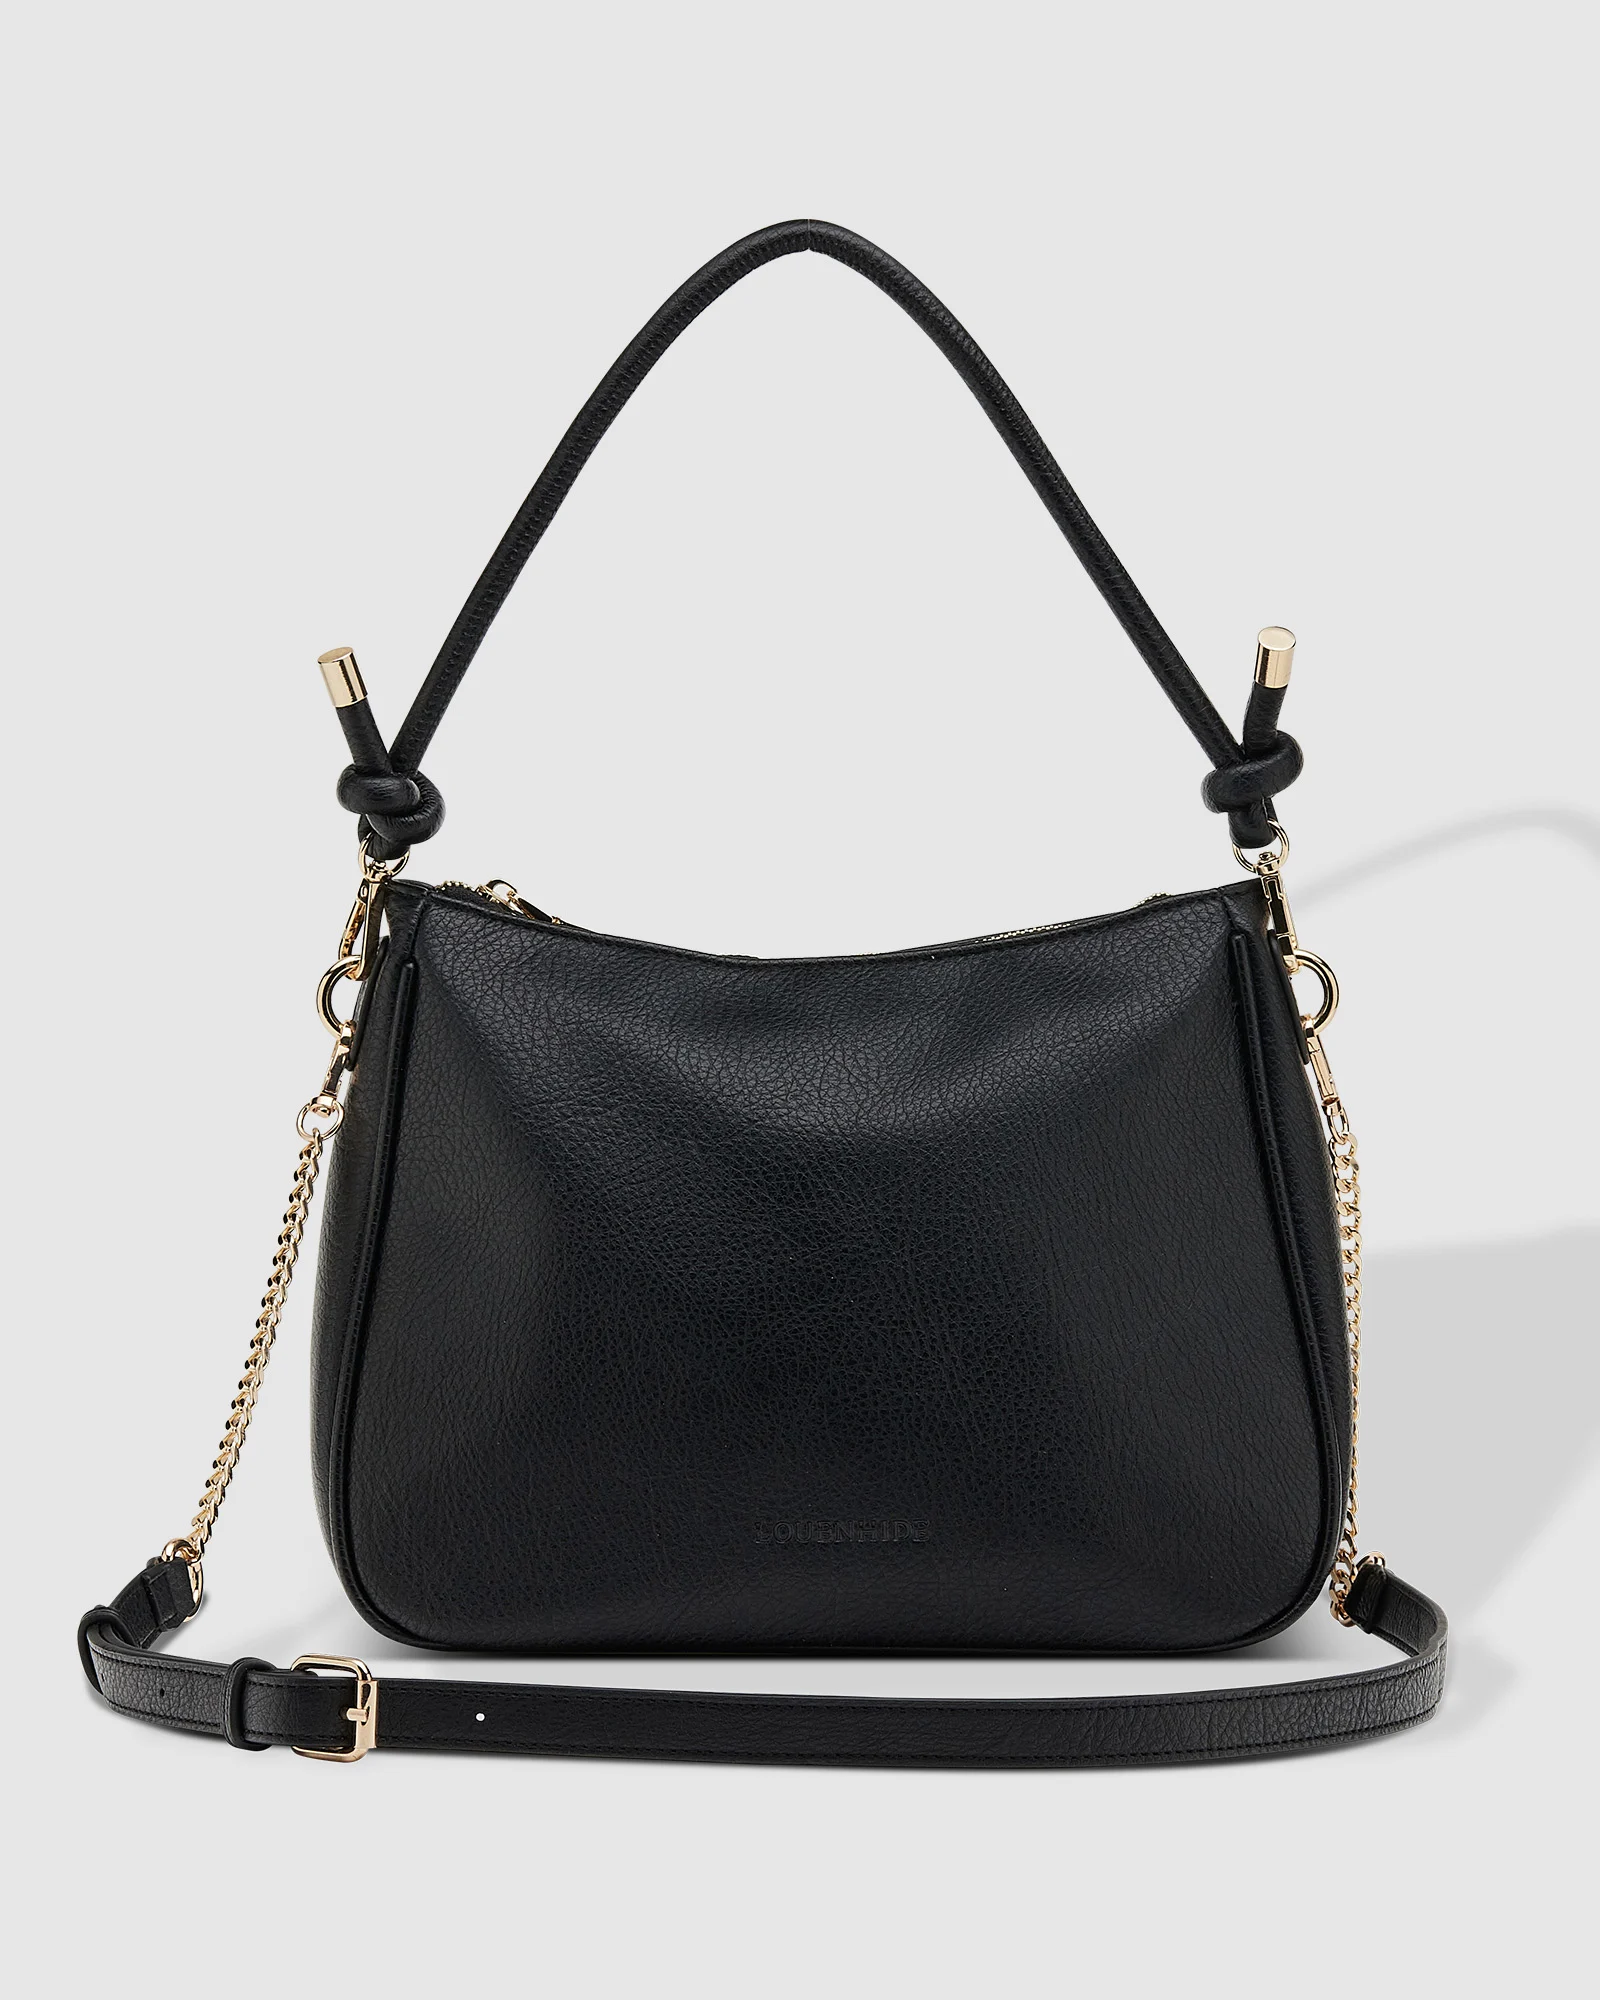 Louenhide Baby Remi Shoulder Bag - Black Accessories - Other Accessories - Handbags & Wallets by Louenhide | Grace the Boutique